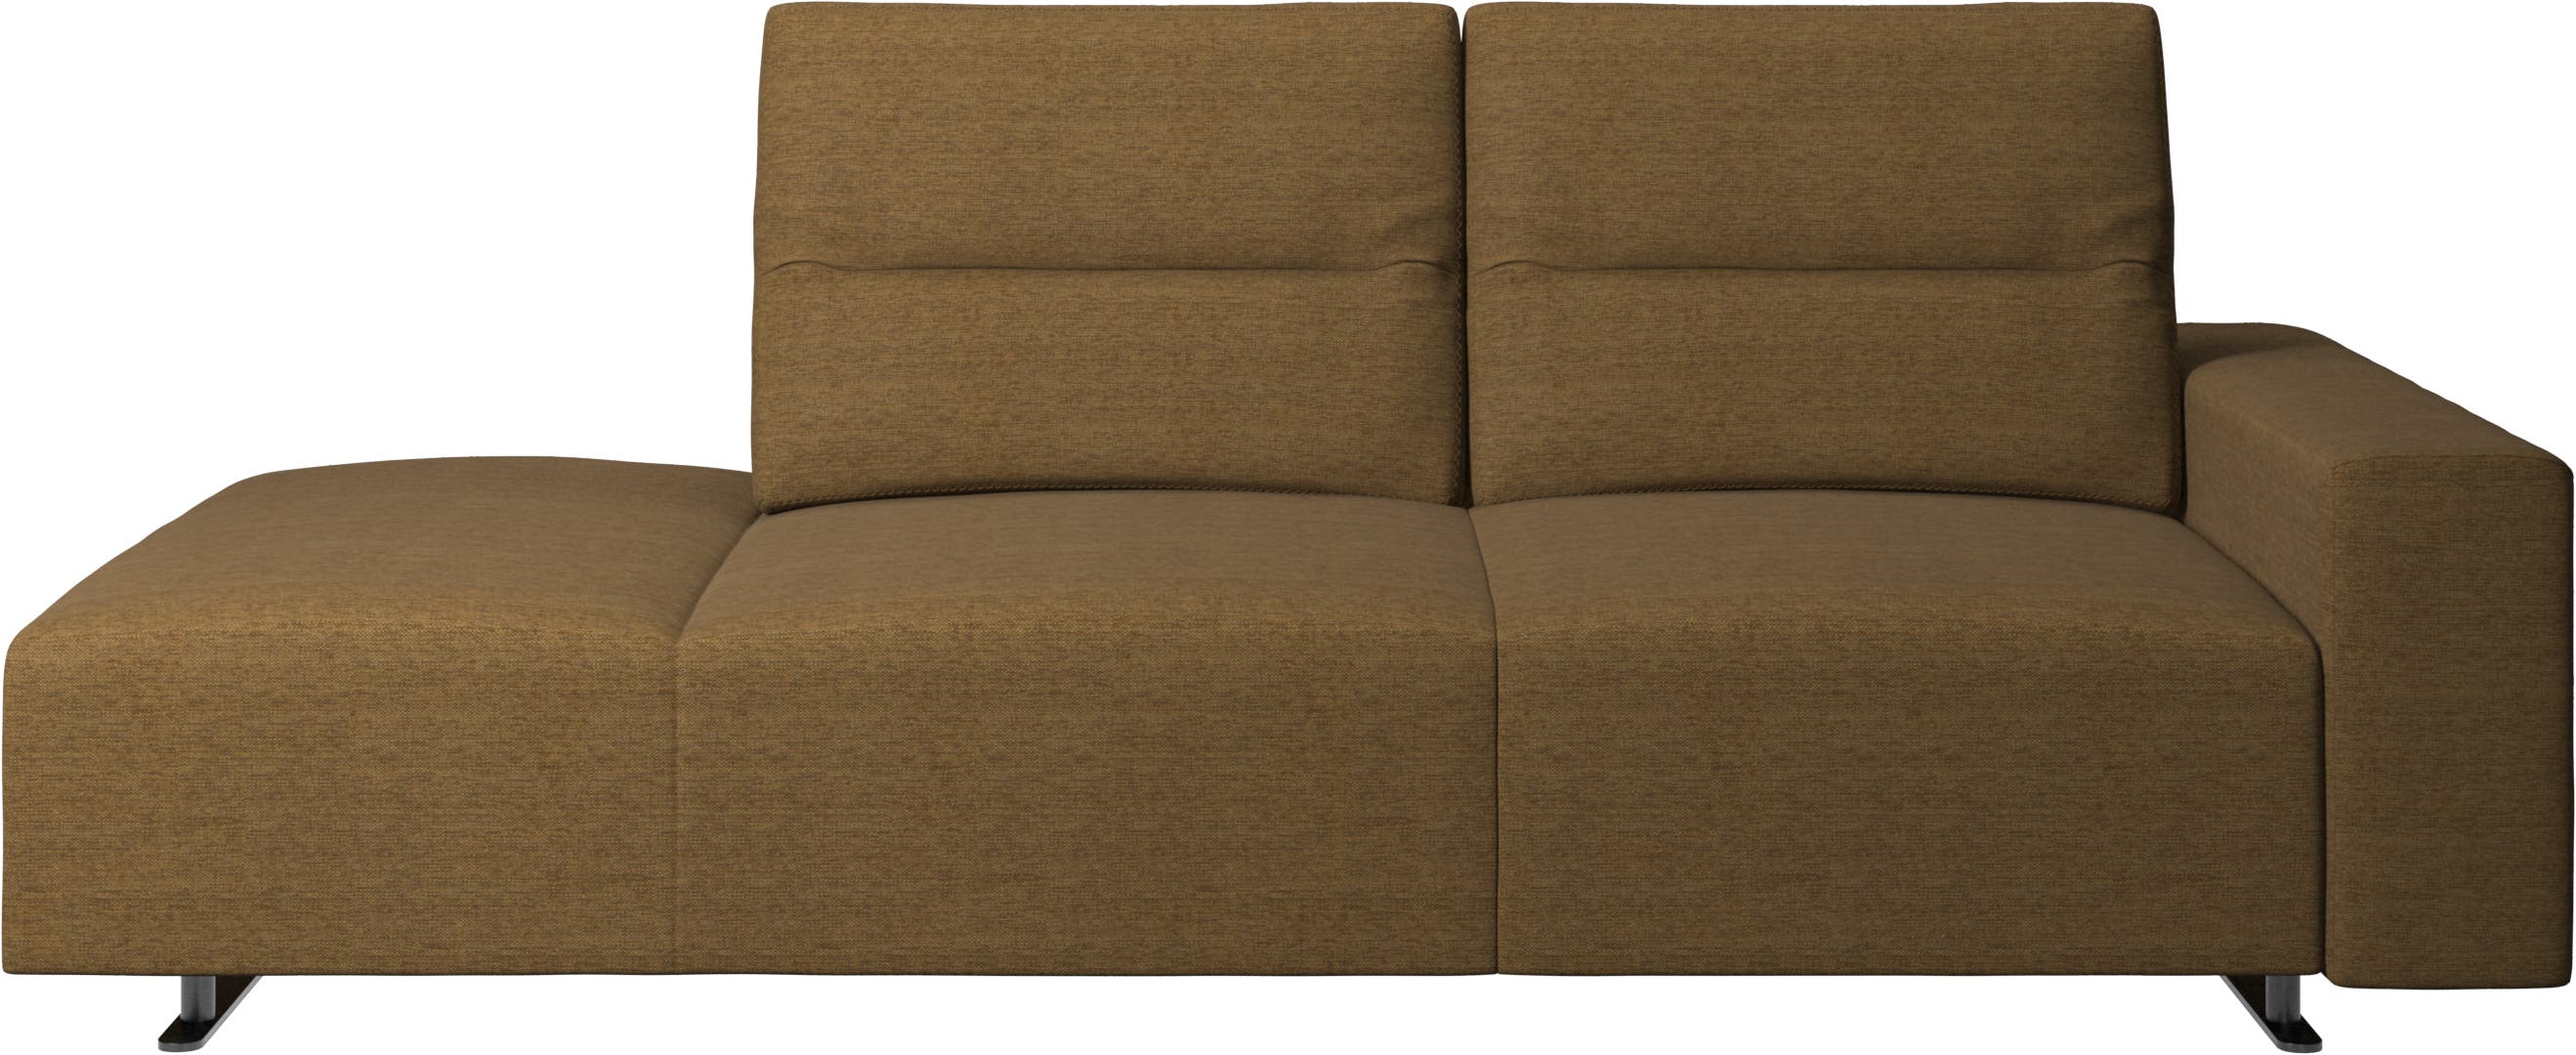 Καναπές Hampton με ρυθμιζόμενη πλάτη και αριστερή μονάδα lounging, δεξί μπράτσο με αποθηκετικό χώρο